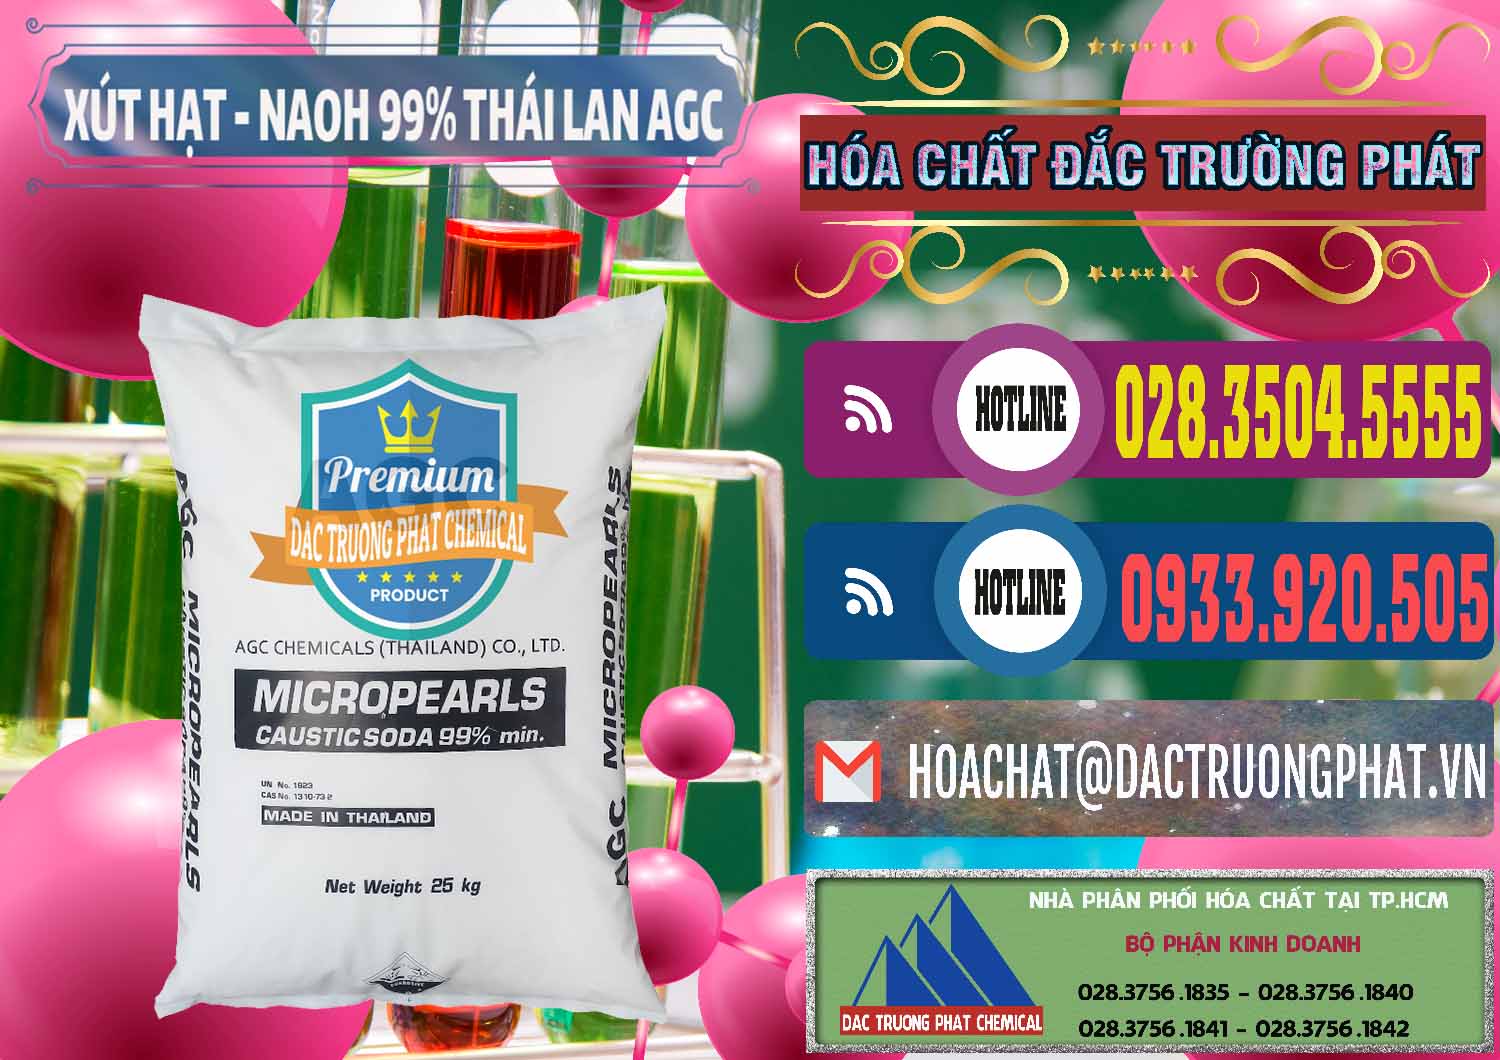 Cty chuyên nhập khẩu _ bán Xút Hạt - NaOH Bột 99% AGC Thái Lan - 0168 - Nơi cung cấp ( nhập khẩu ) hóa chất tại TP.HCM - muabanhoachat.com.vn